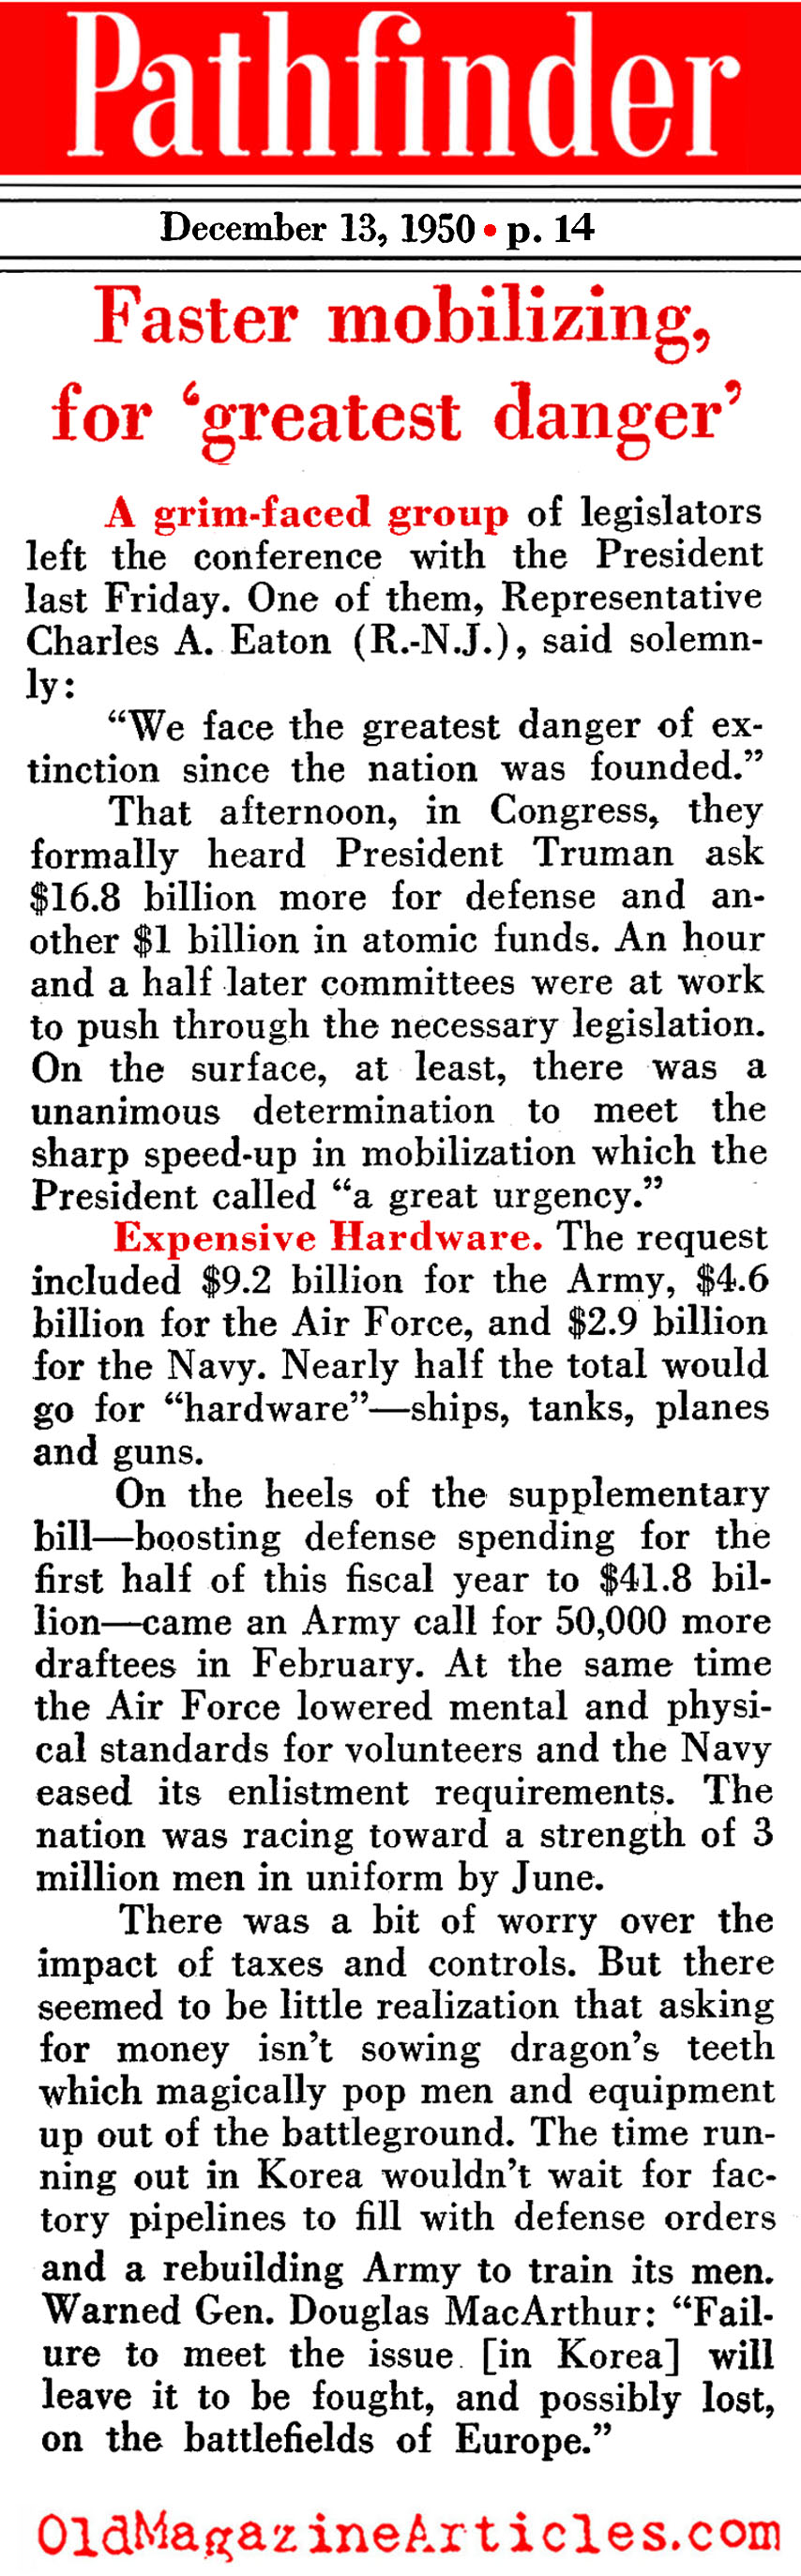 The War Budget Grows (Pathfinder Magazine, 1950)